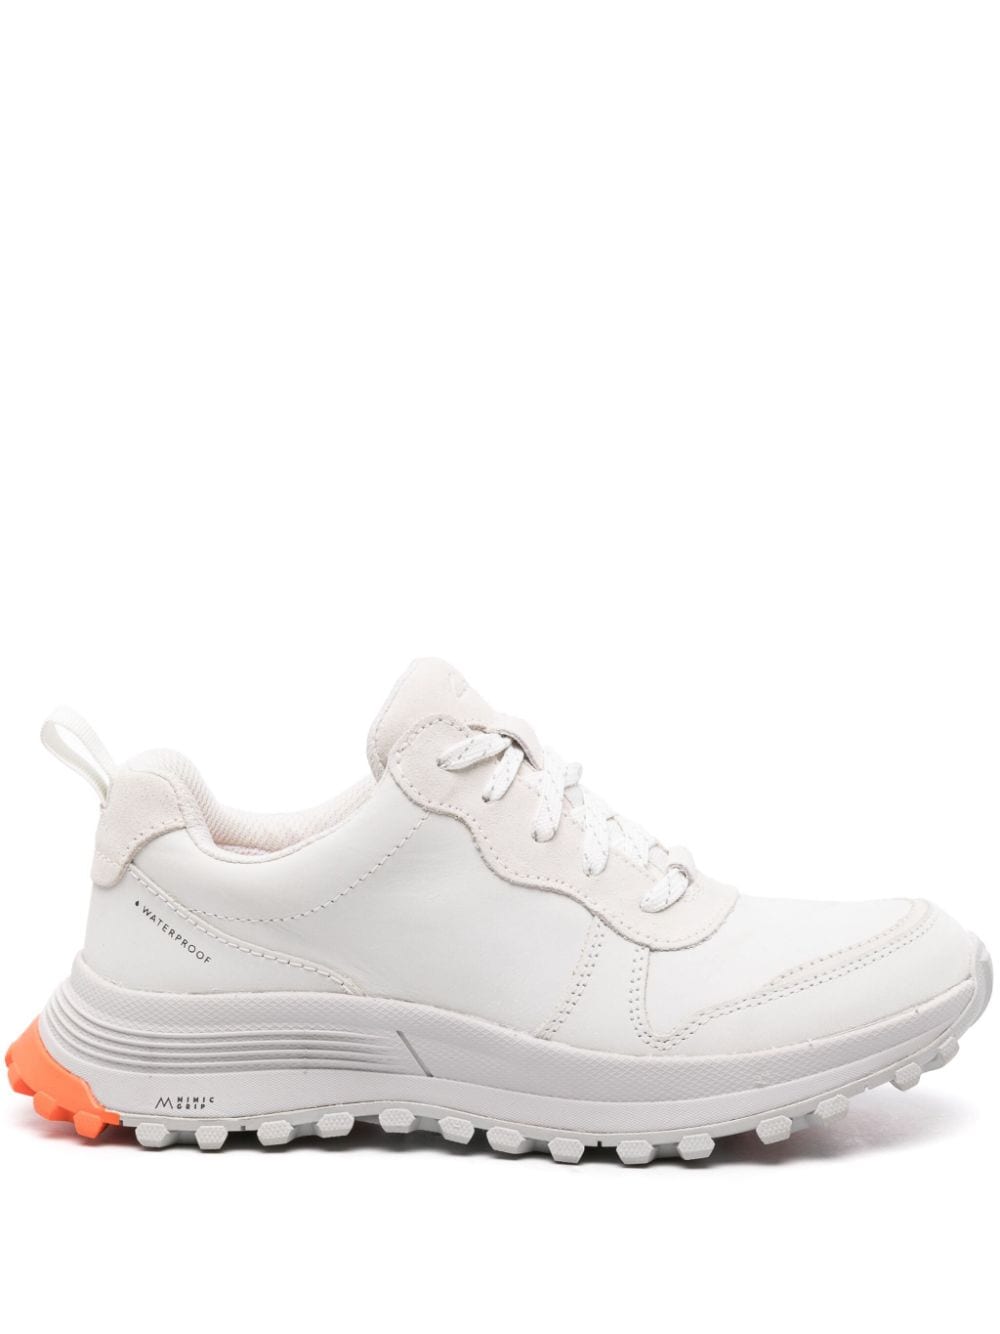 Clarks Atltrek Waterproof Sneakers In White